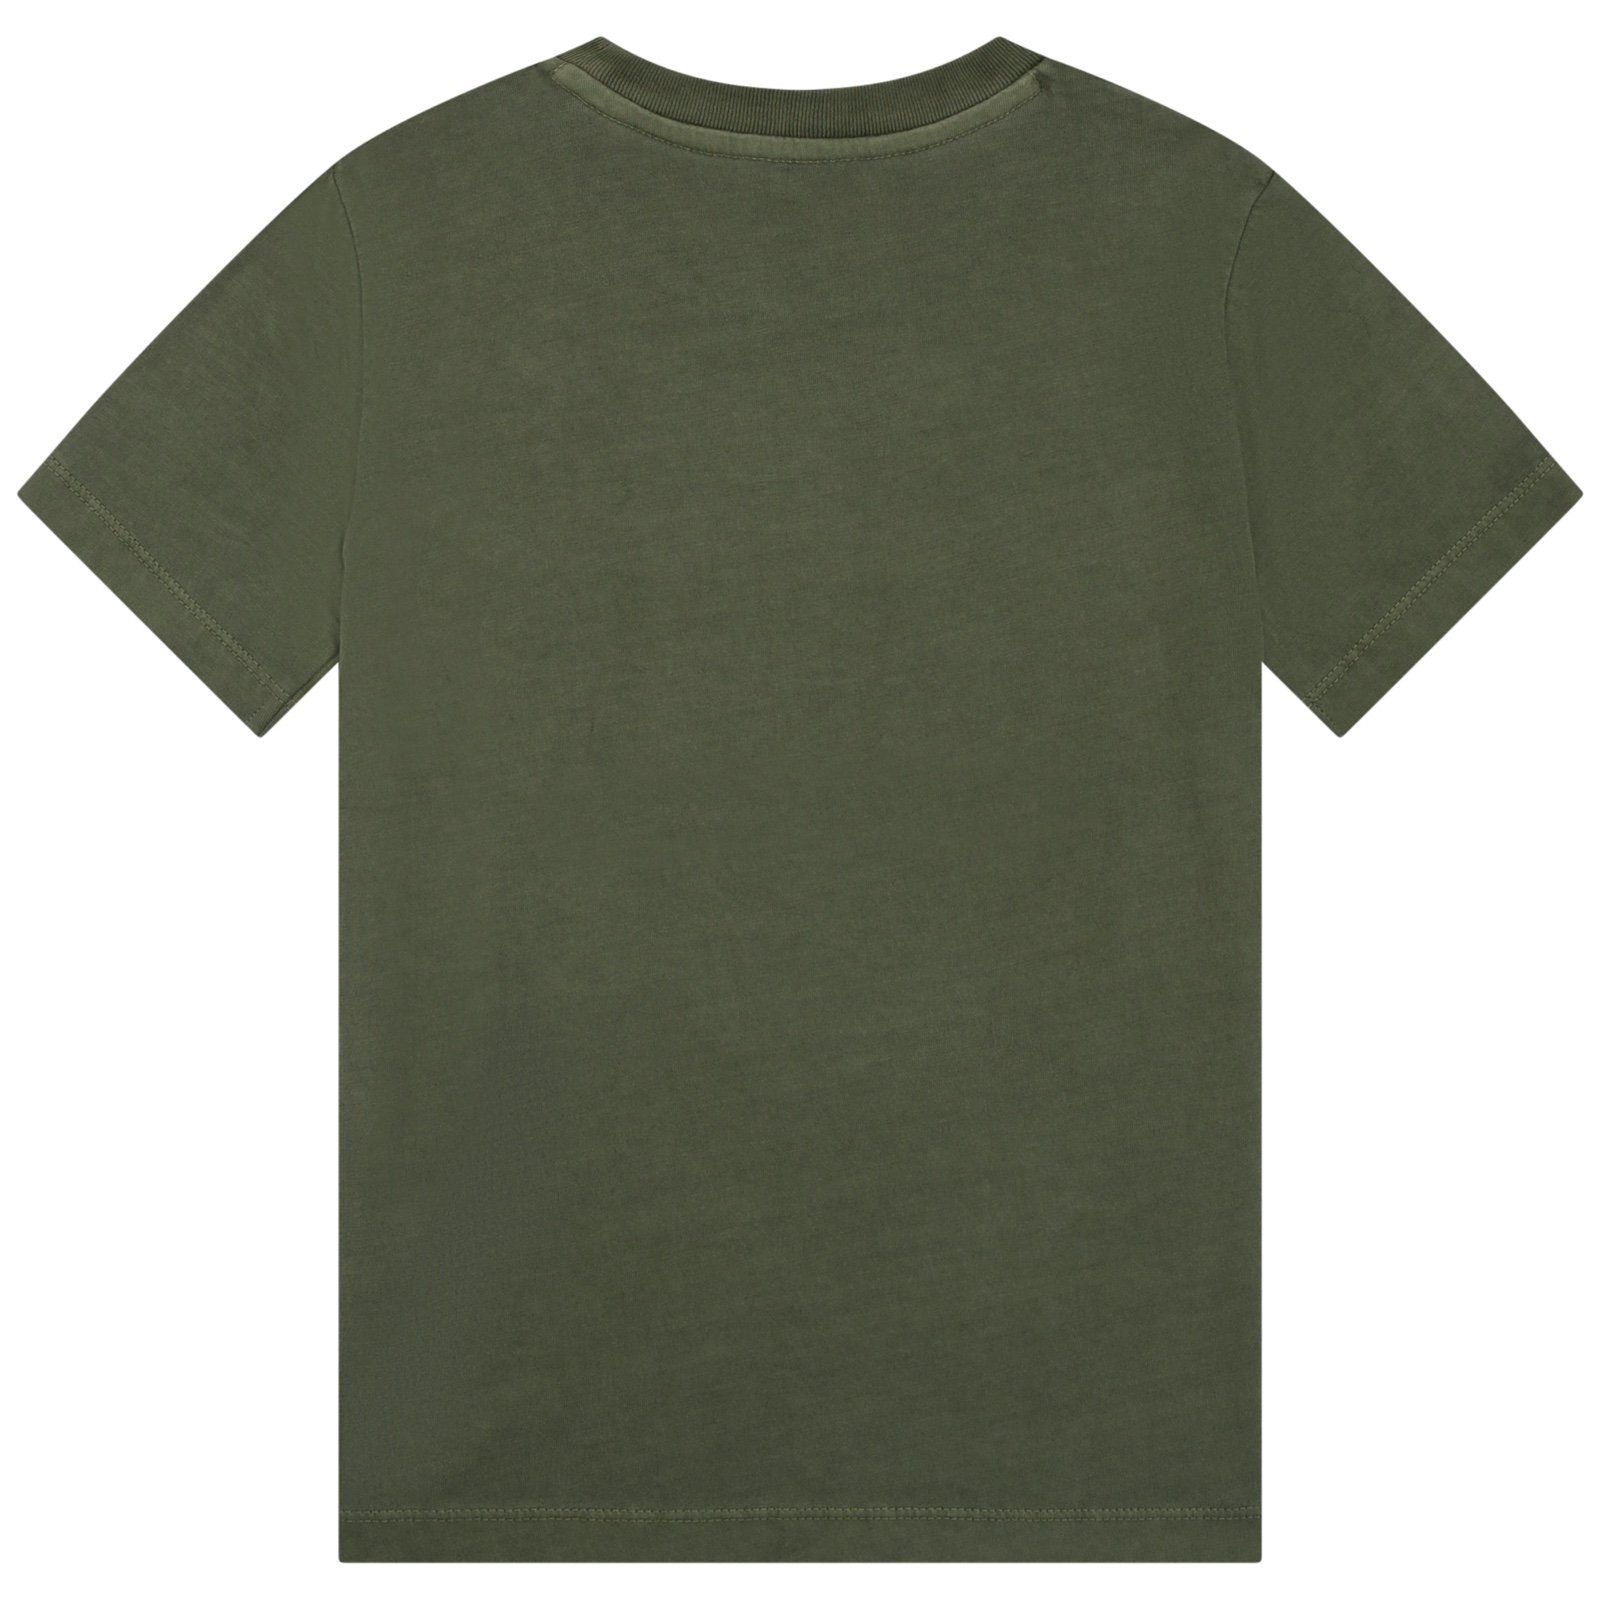 T-Shirt olivgrün VOLTAIRE ZADIG T-Shirt & & Flockprin mit Voltaire Zadig